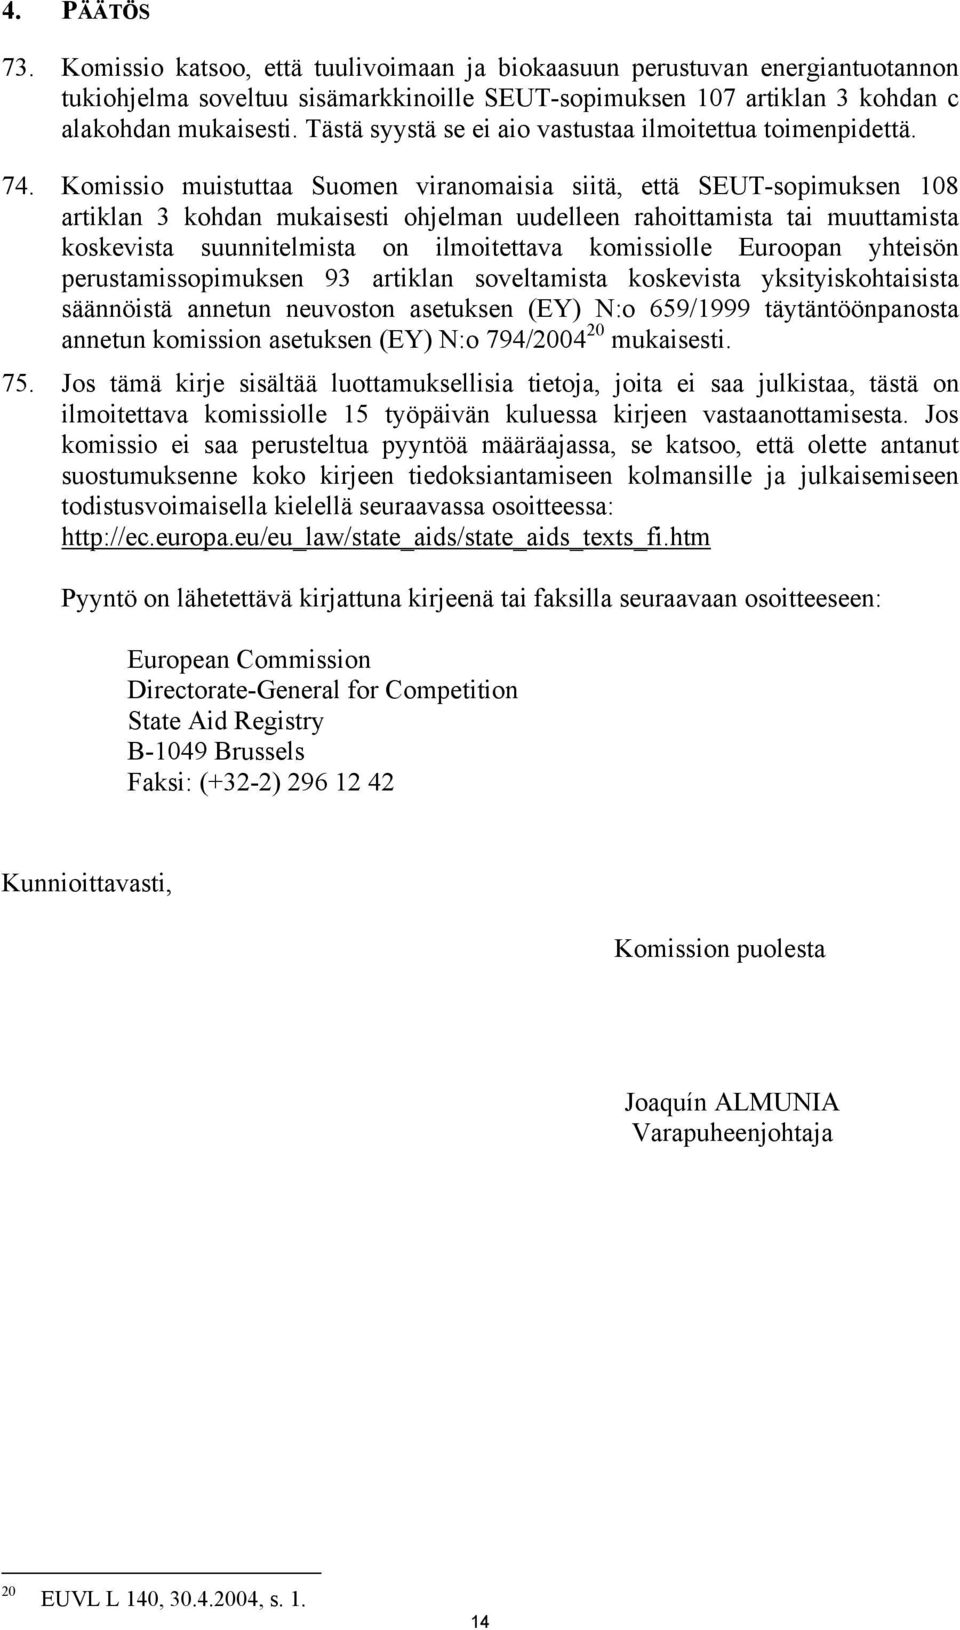 Komissio muistuttaa Suomen viranomaisia siitä, että SEUT-sopimuksen 108 artiklan 3 kohdan mukaisesti ohjelman uudelleen rahoittamista tai muuttamista koskevista suunnitelmista on ilmoitettava